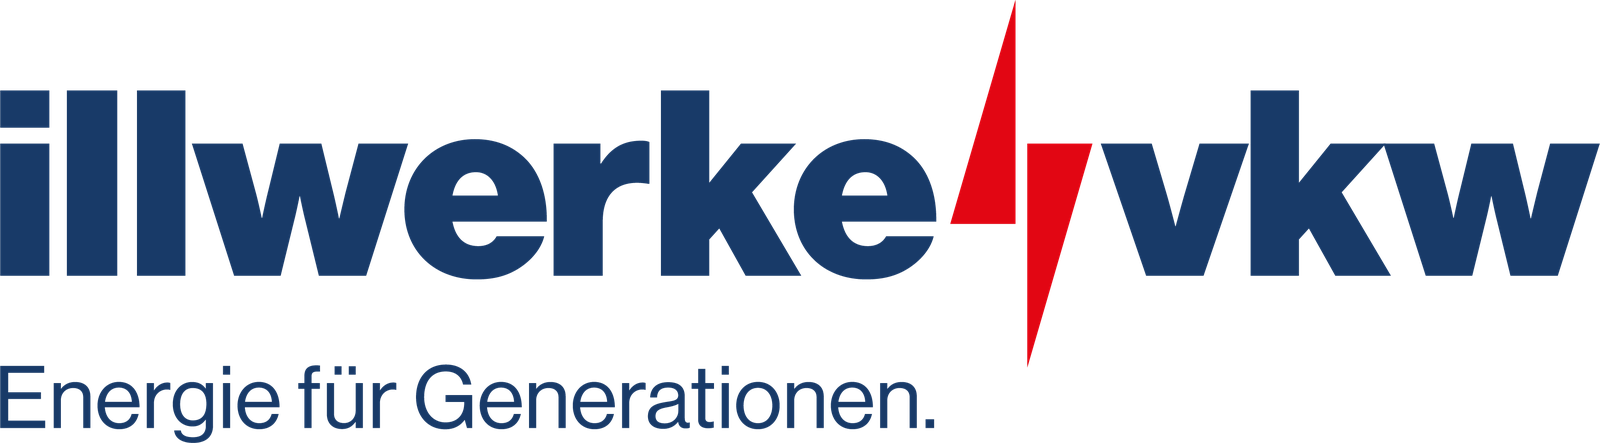 Logo illwerkevkw